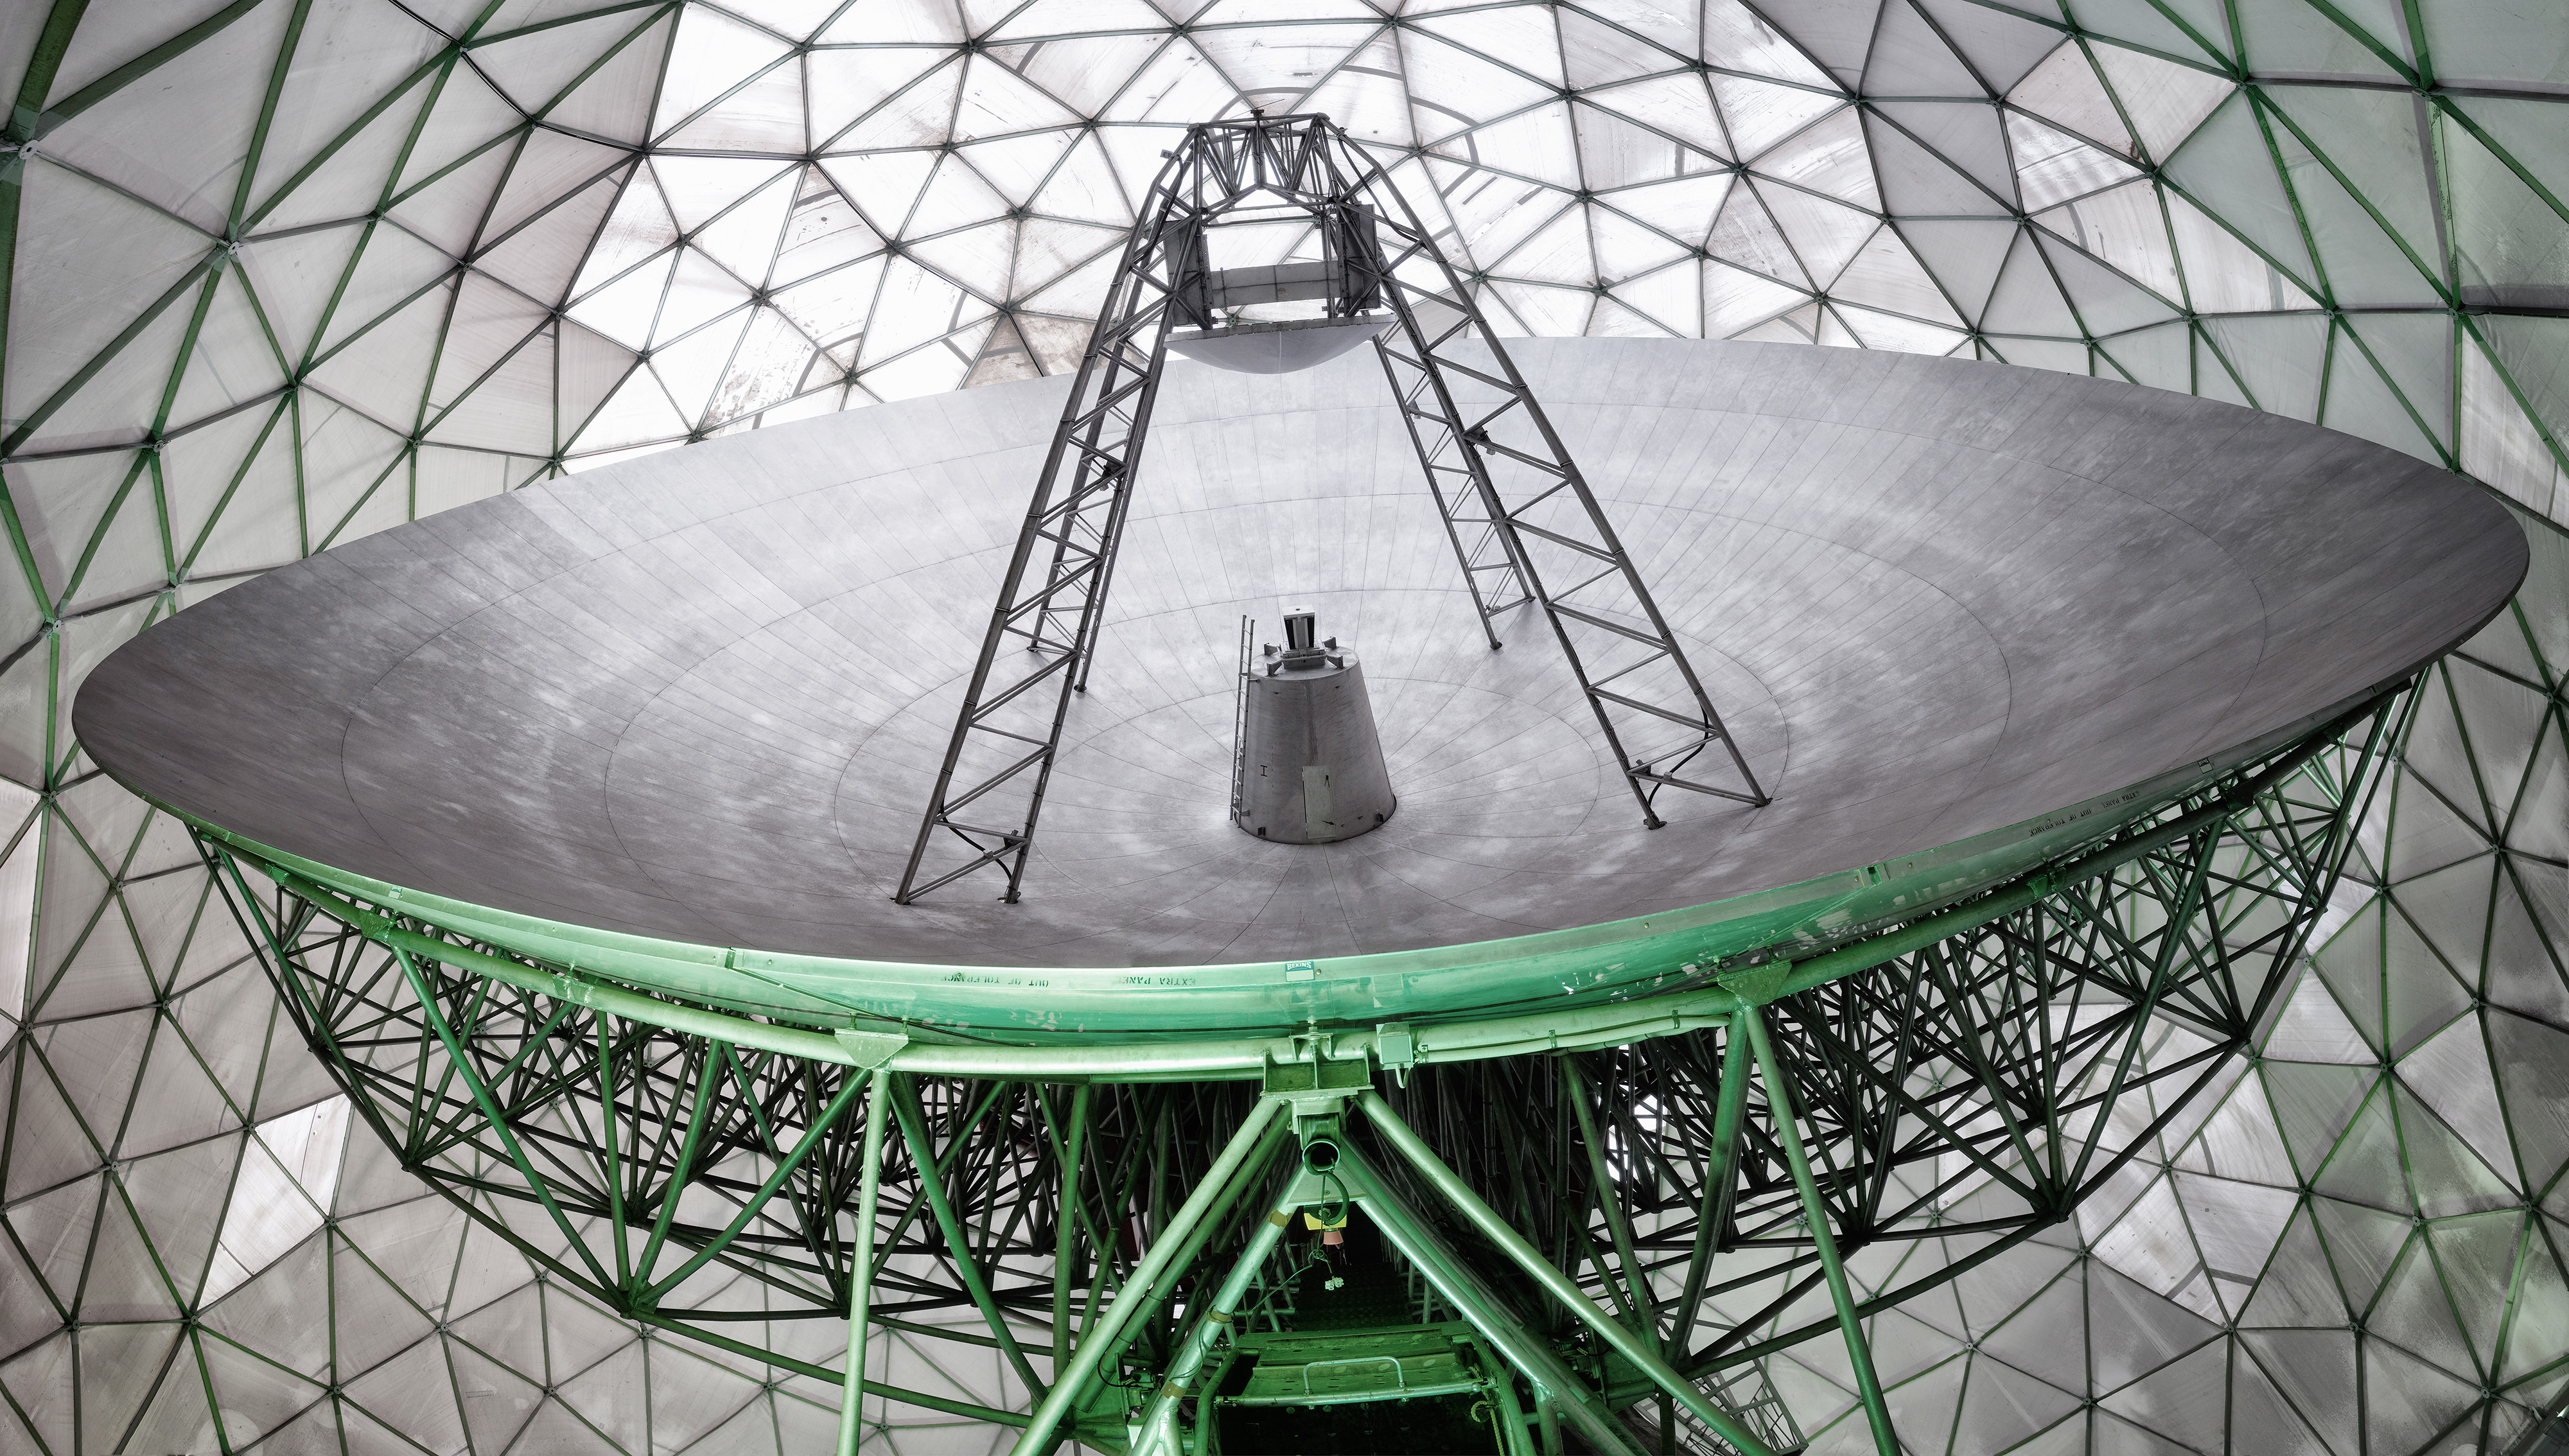 : Radar warnt vor Weltraummüll: Das Weltraumbeobachtungsradar TIRA des Fraunhofer FHR entdeckt auch kleinste Trümmerteilchen von 2 cm Größe noch in 1000 km Entfernung